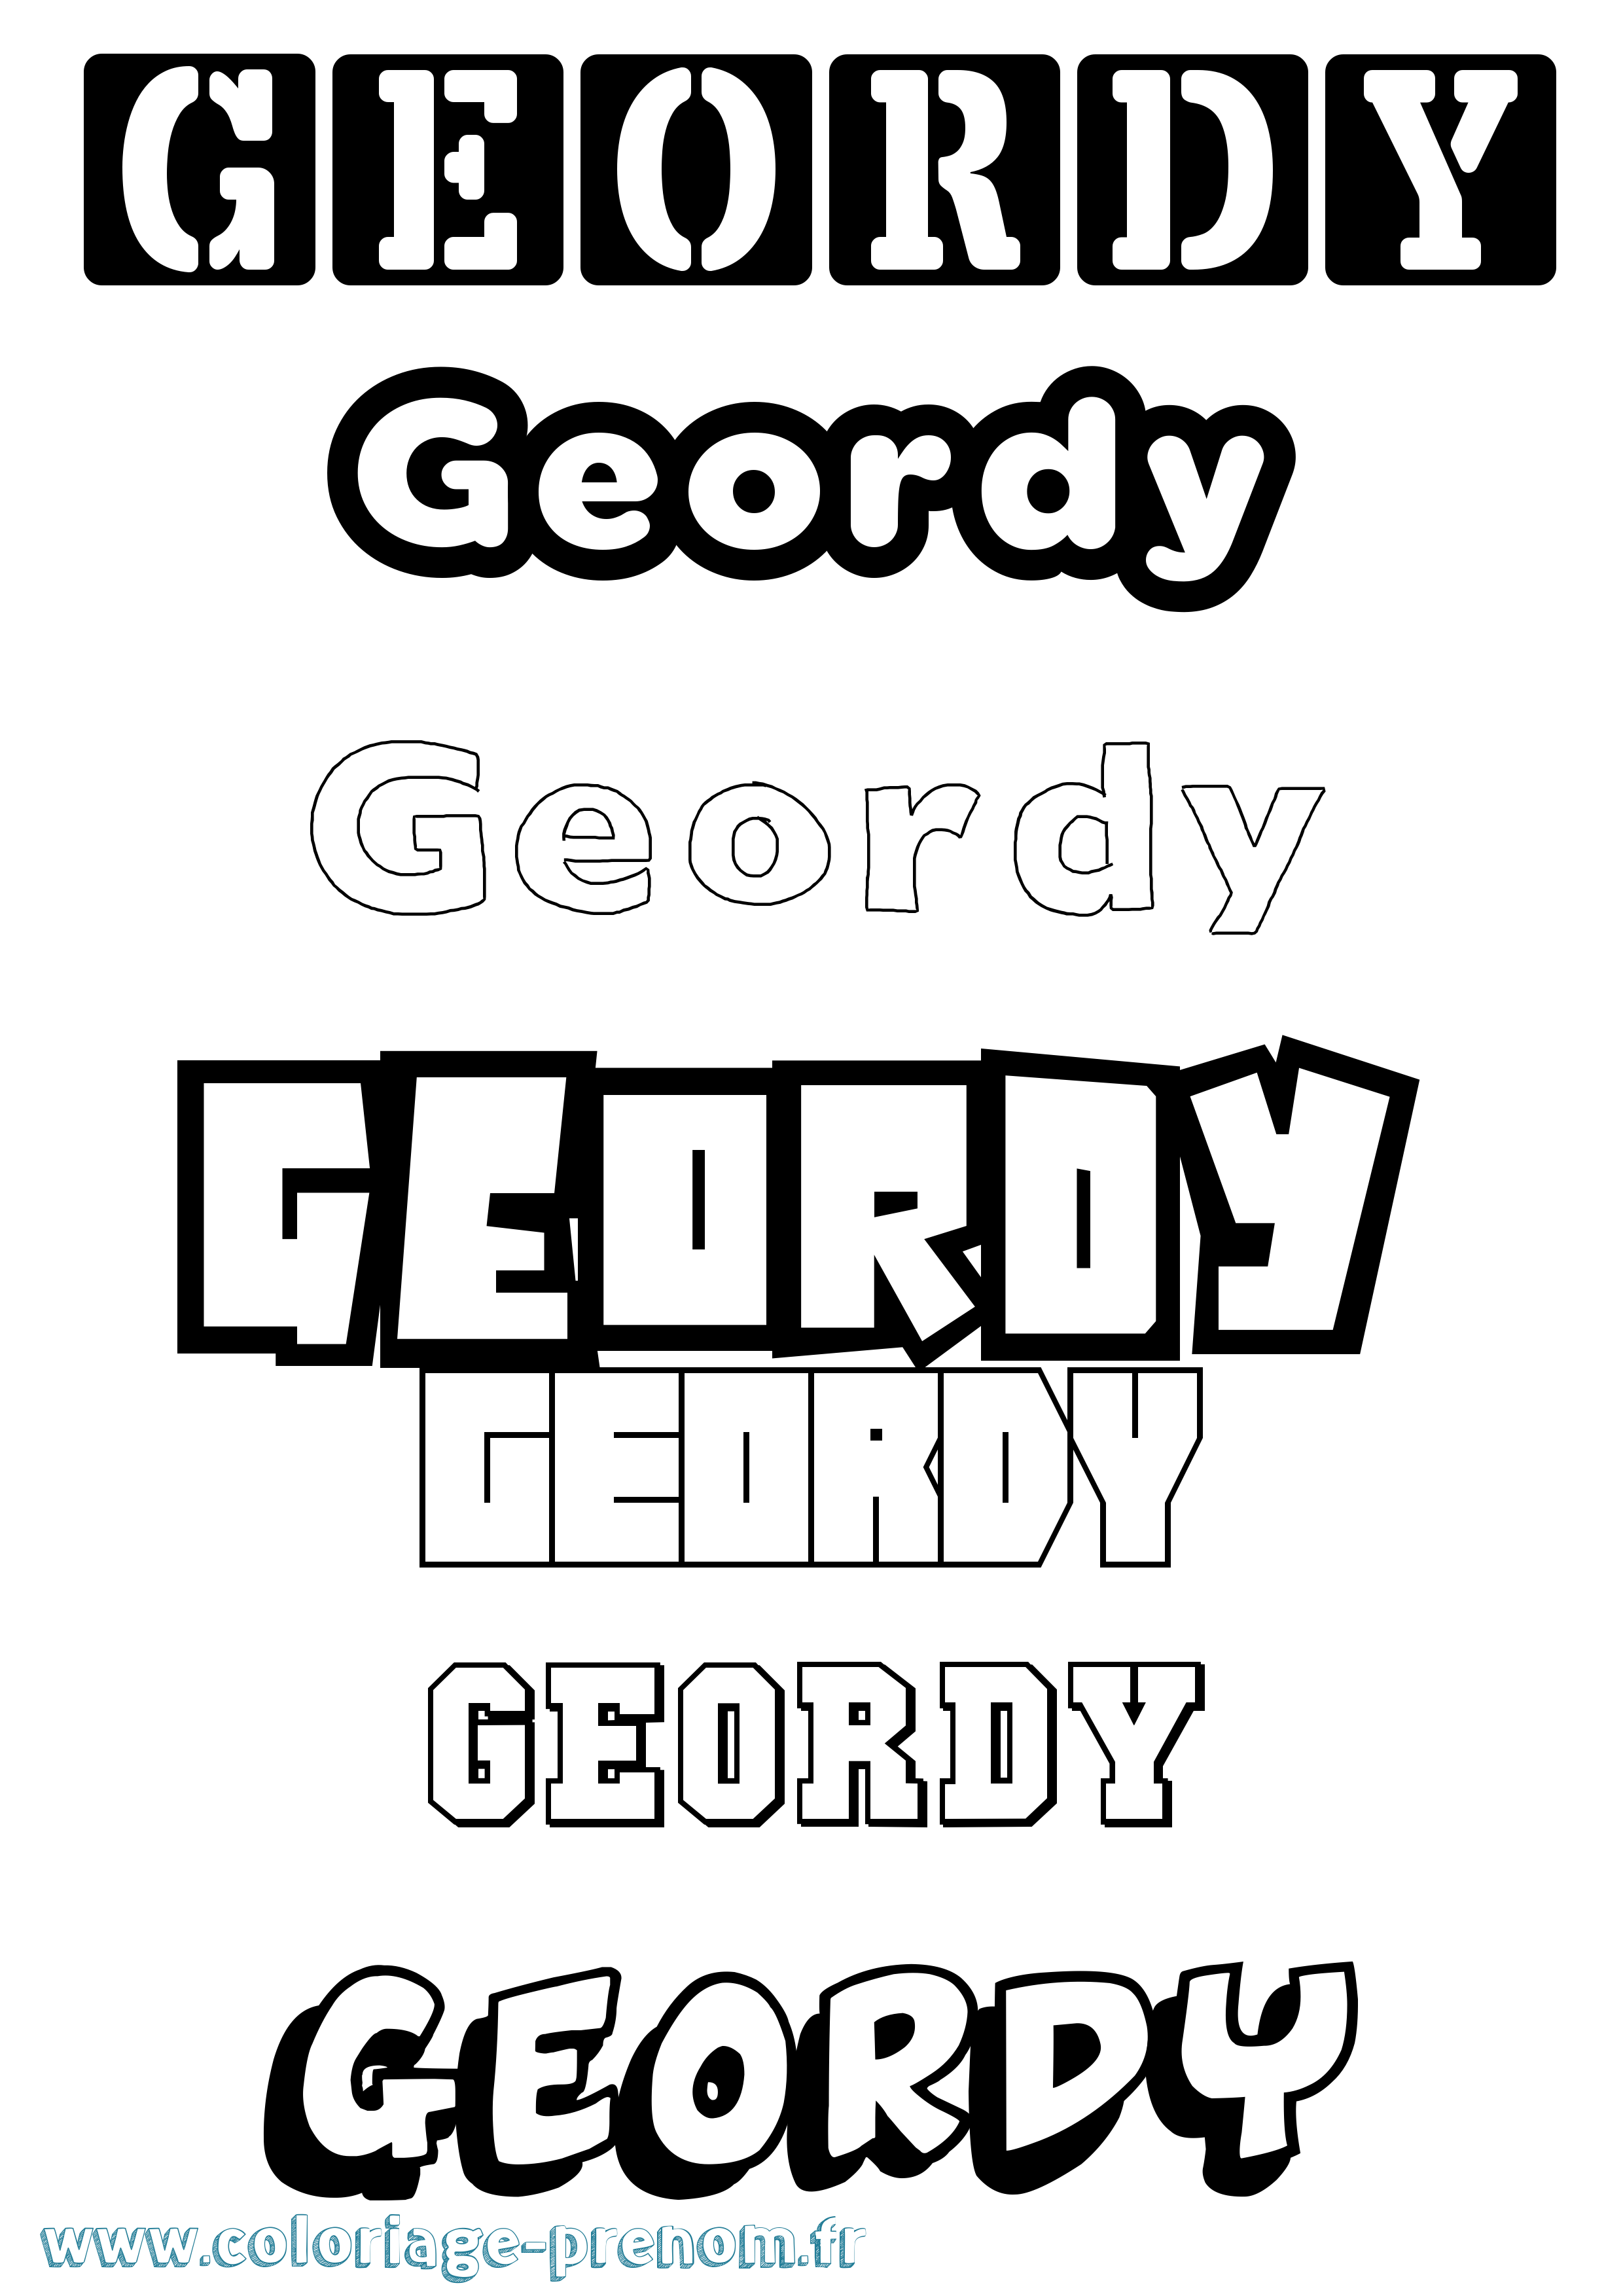 Coloriage prénom Geordy Simple